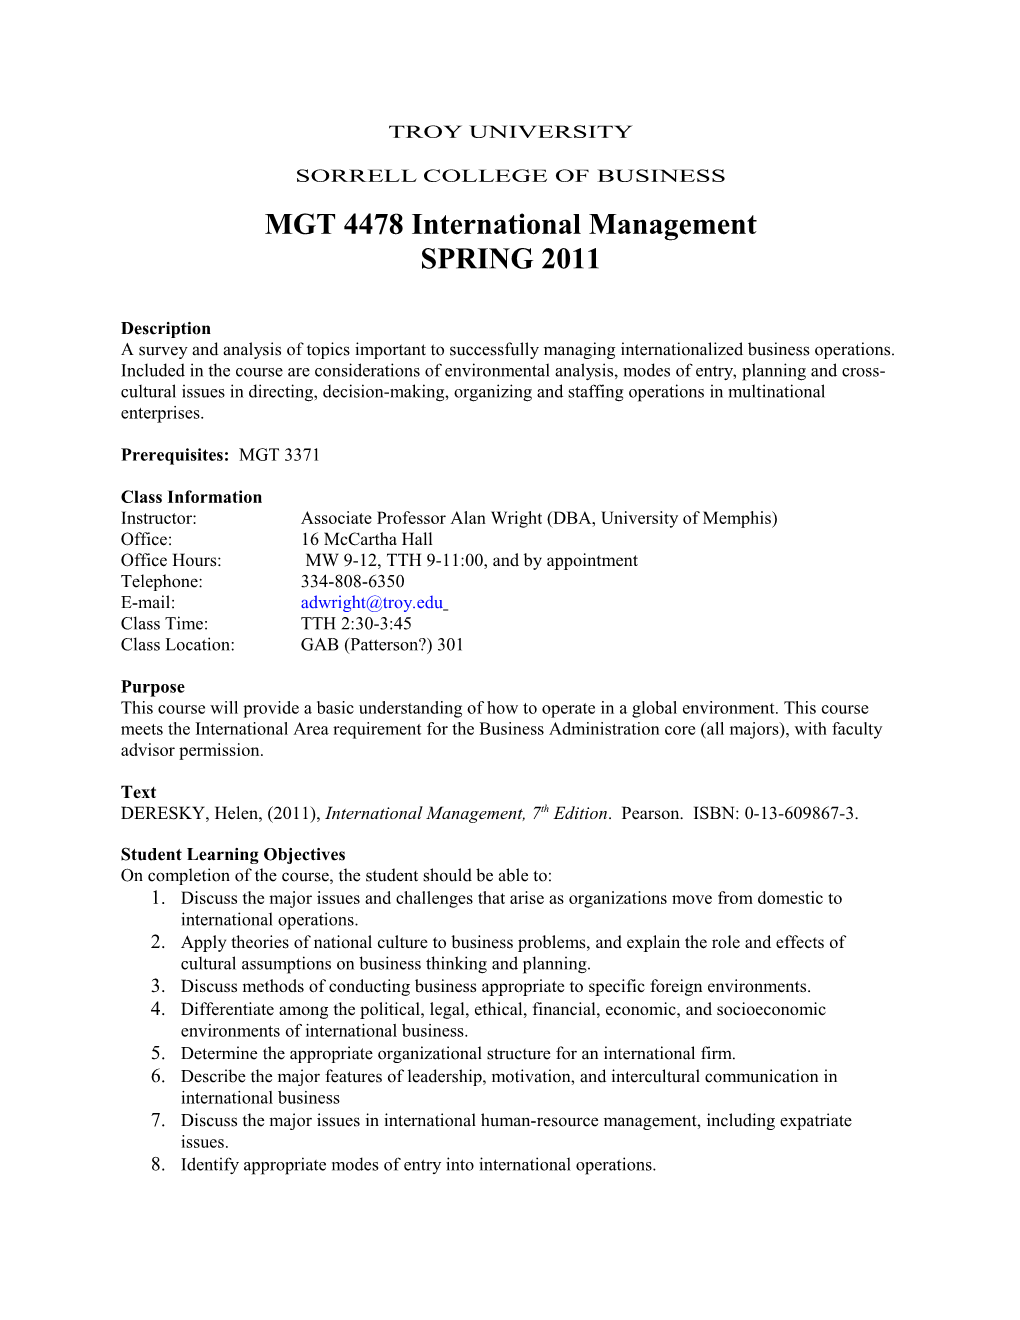 MGT 4478 International Management